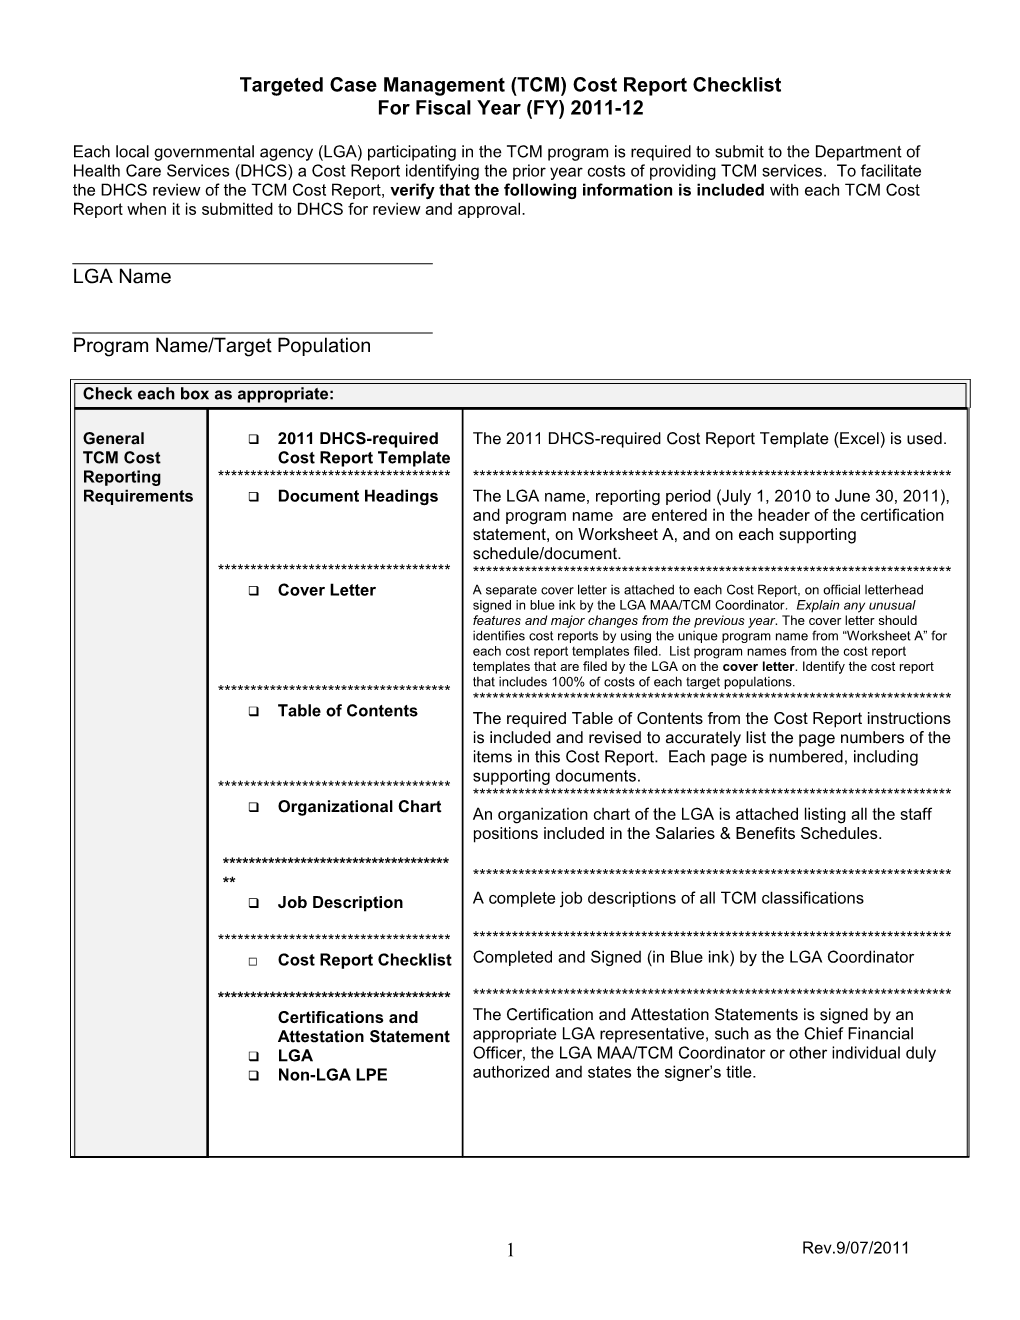 2011 Cost Report Checklist V090711